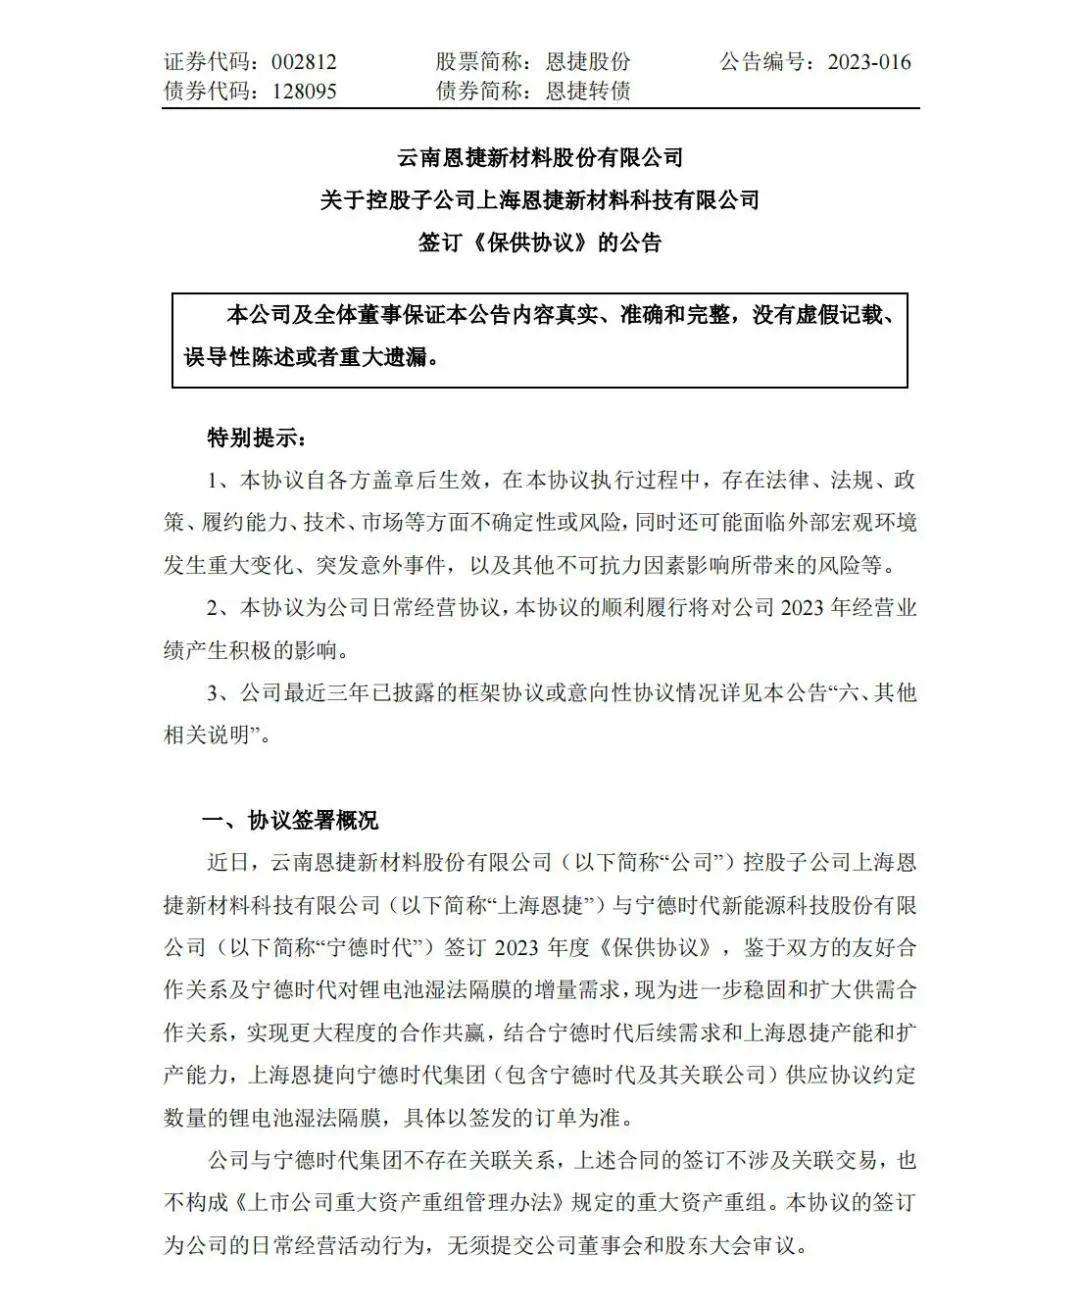 上海恩捷与宁德时代签订2023年度保供协议